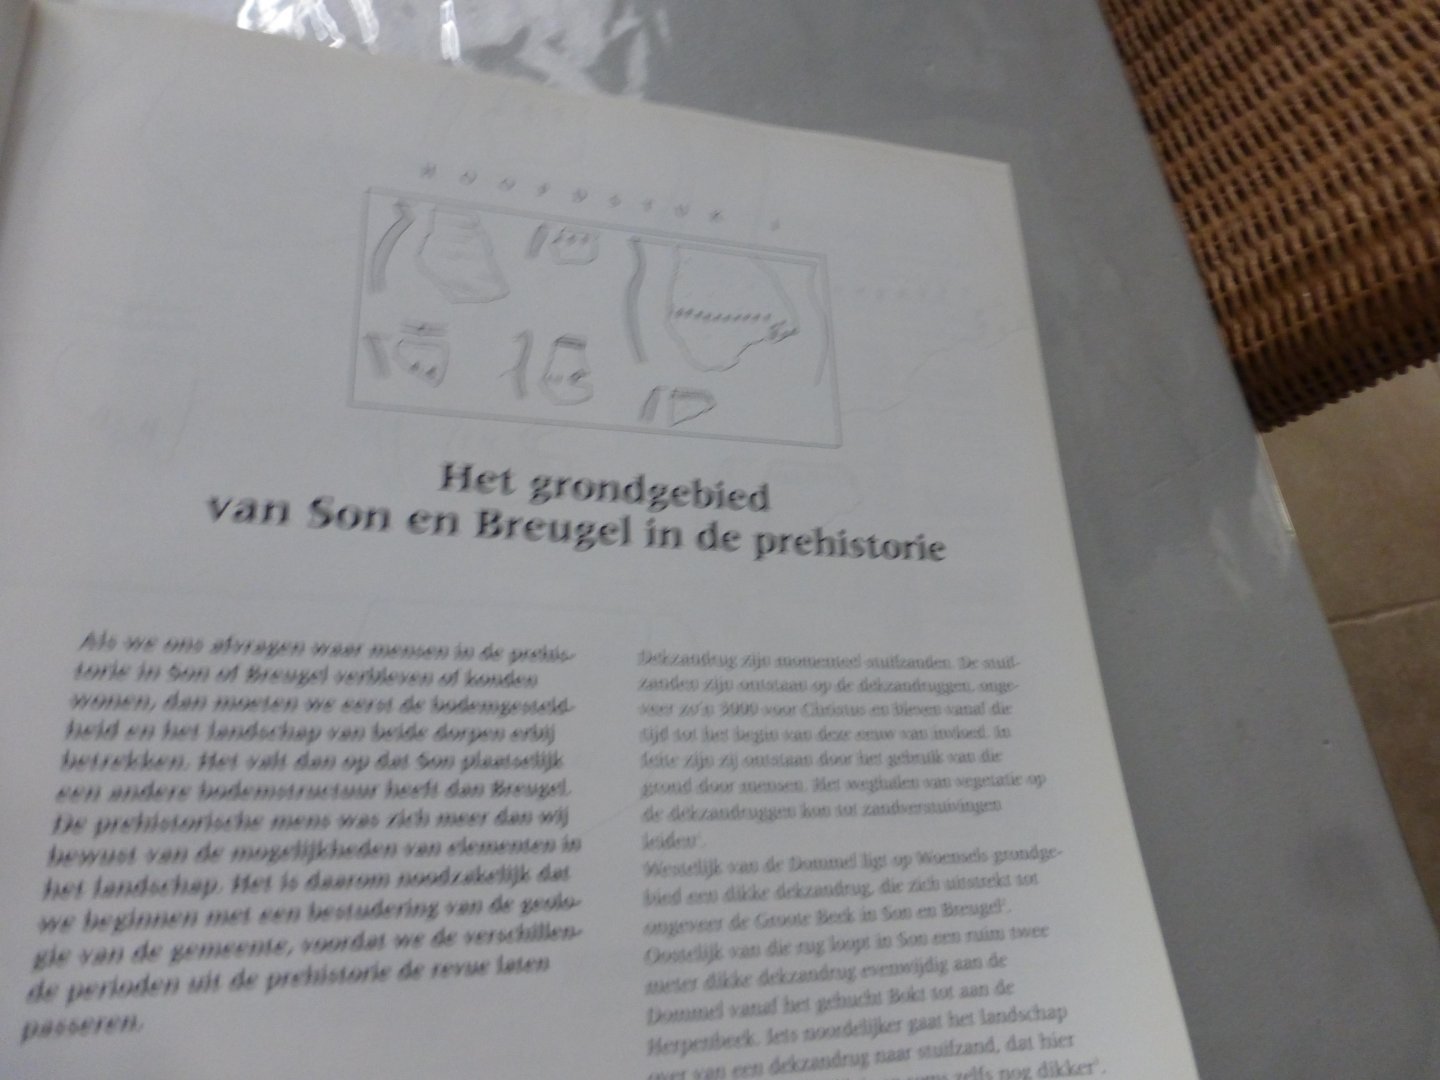 Coenen, Jean - Son en Breugel / druk 1 oudsher een kruispunt van wegen